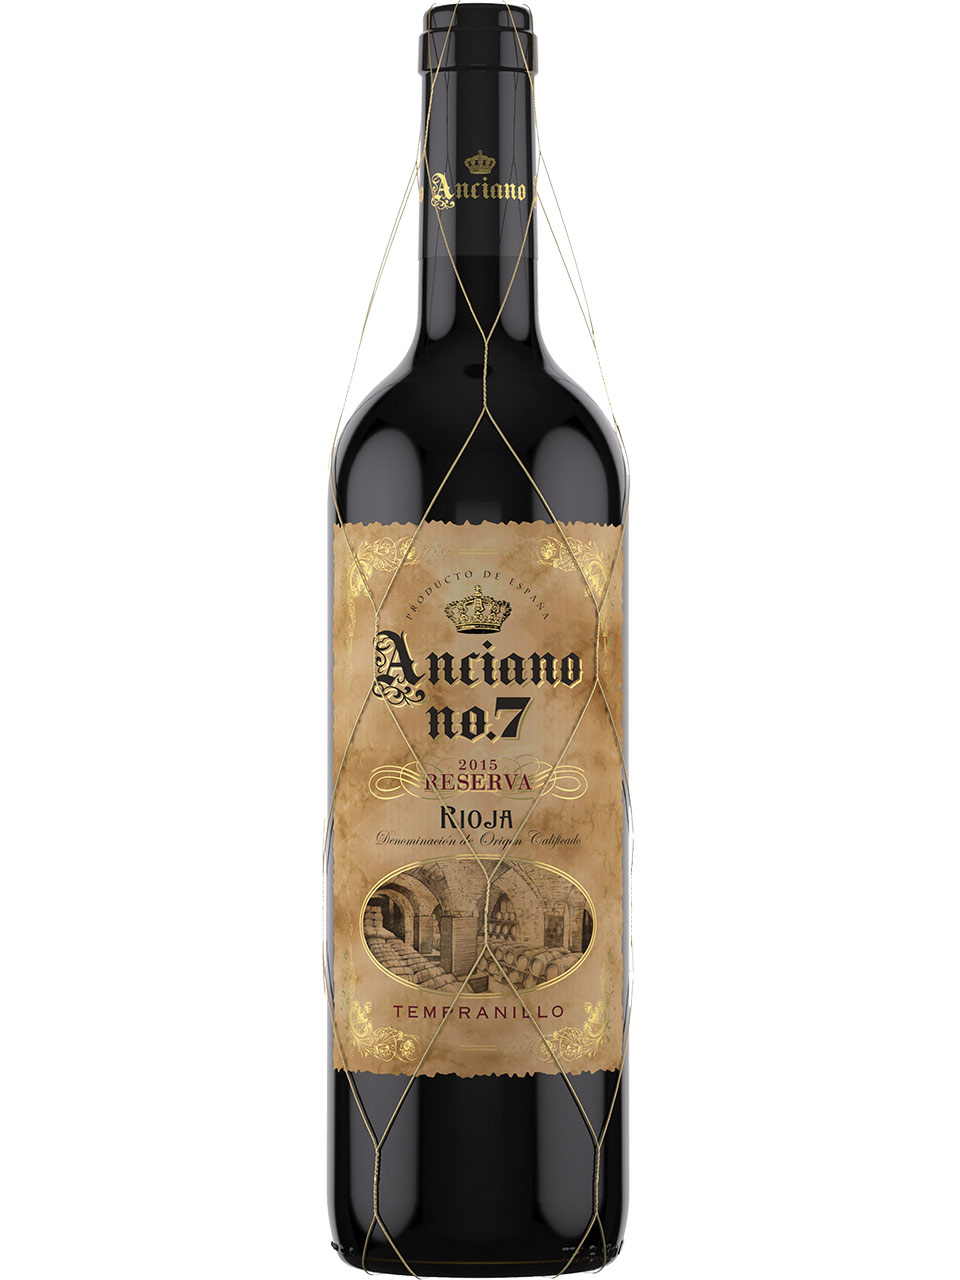 Anciano No.7 Rioja Reserva